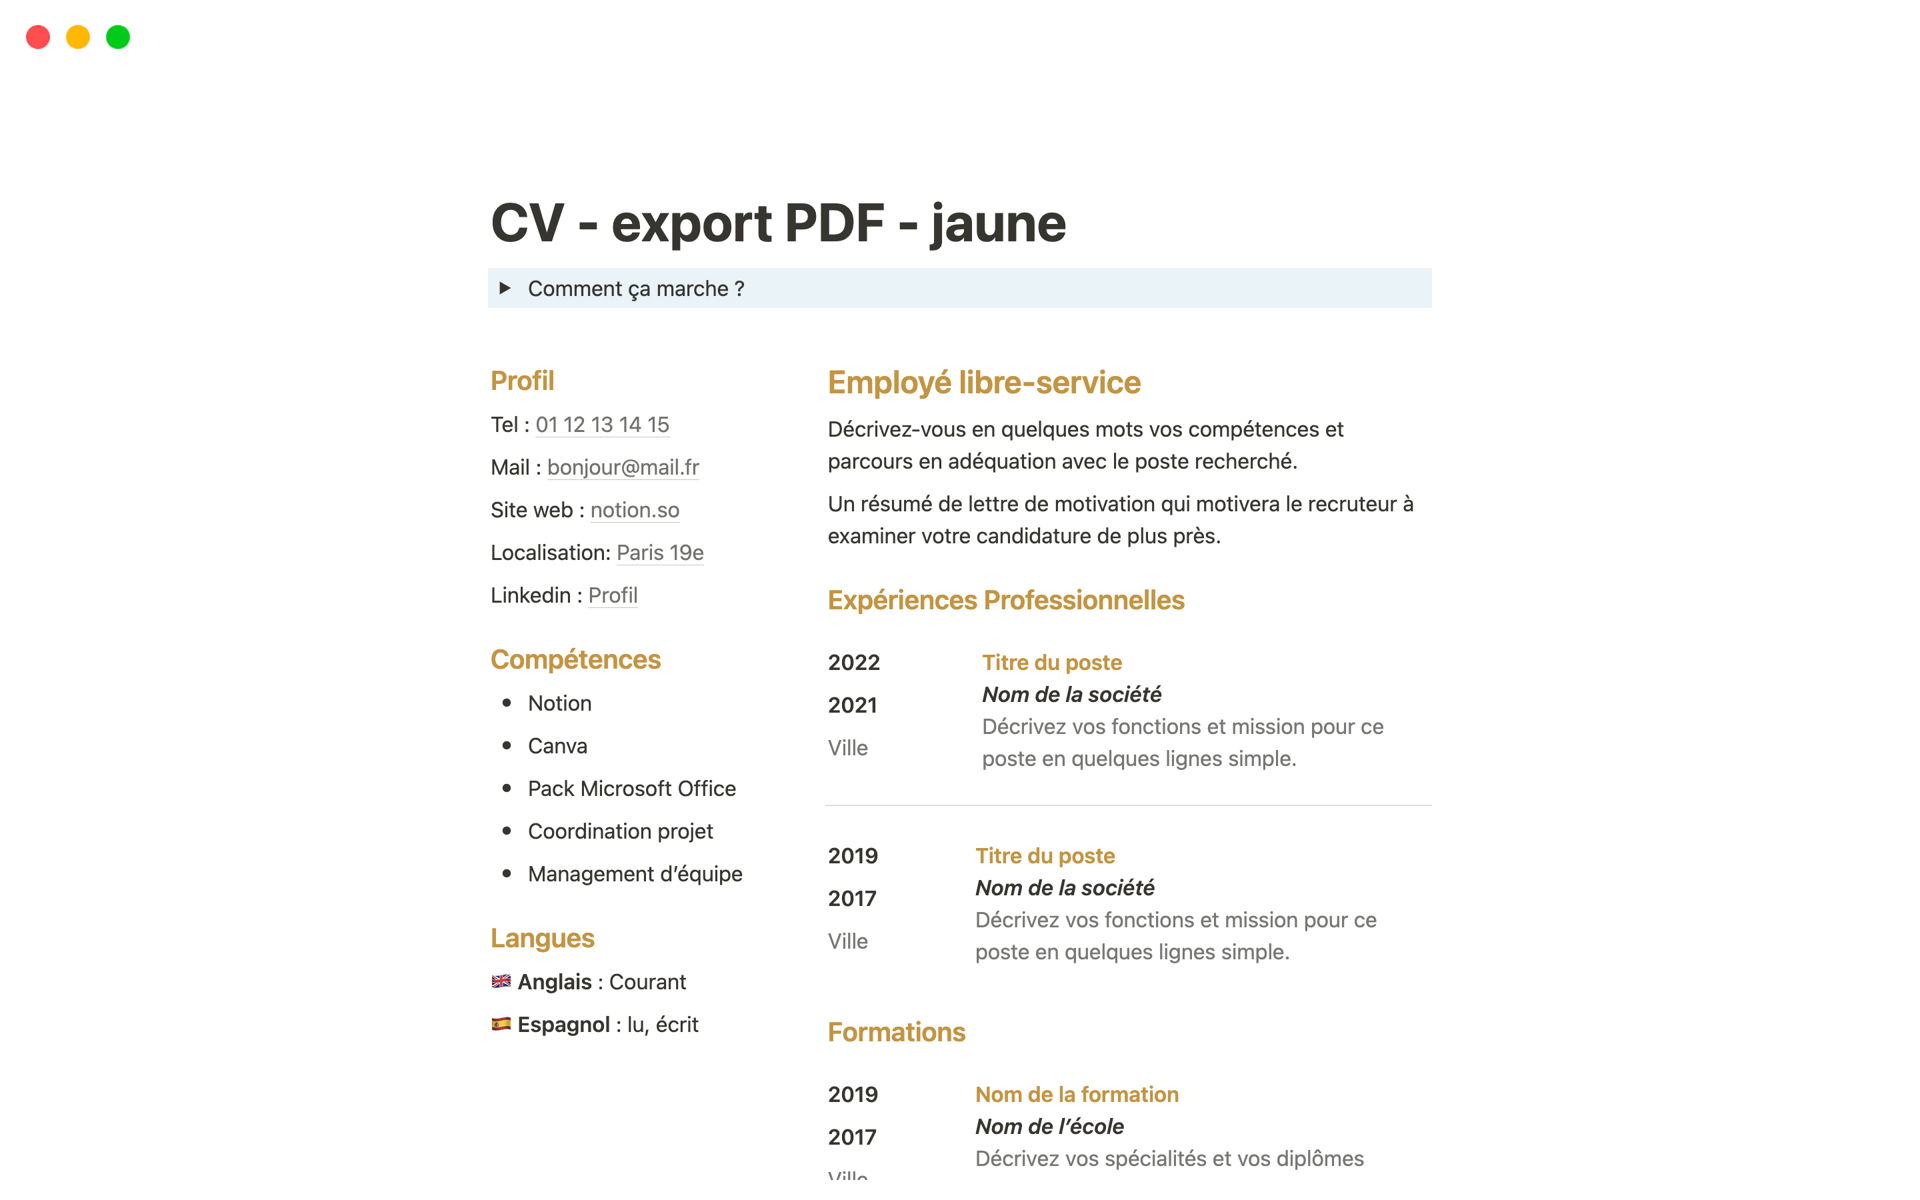 Uma prévia do modelo para CV simple pour export PDF - jaune